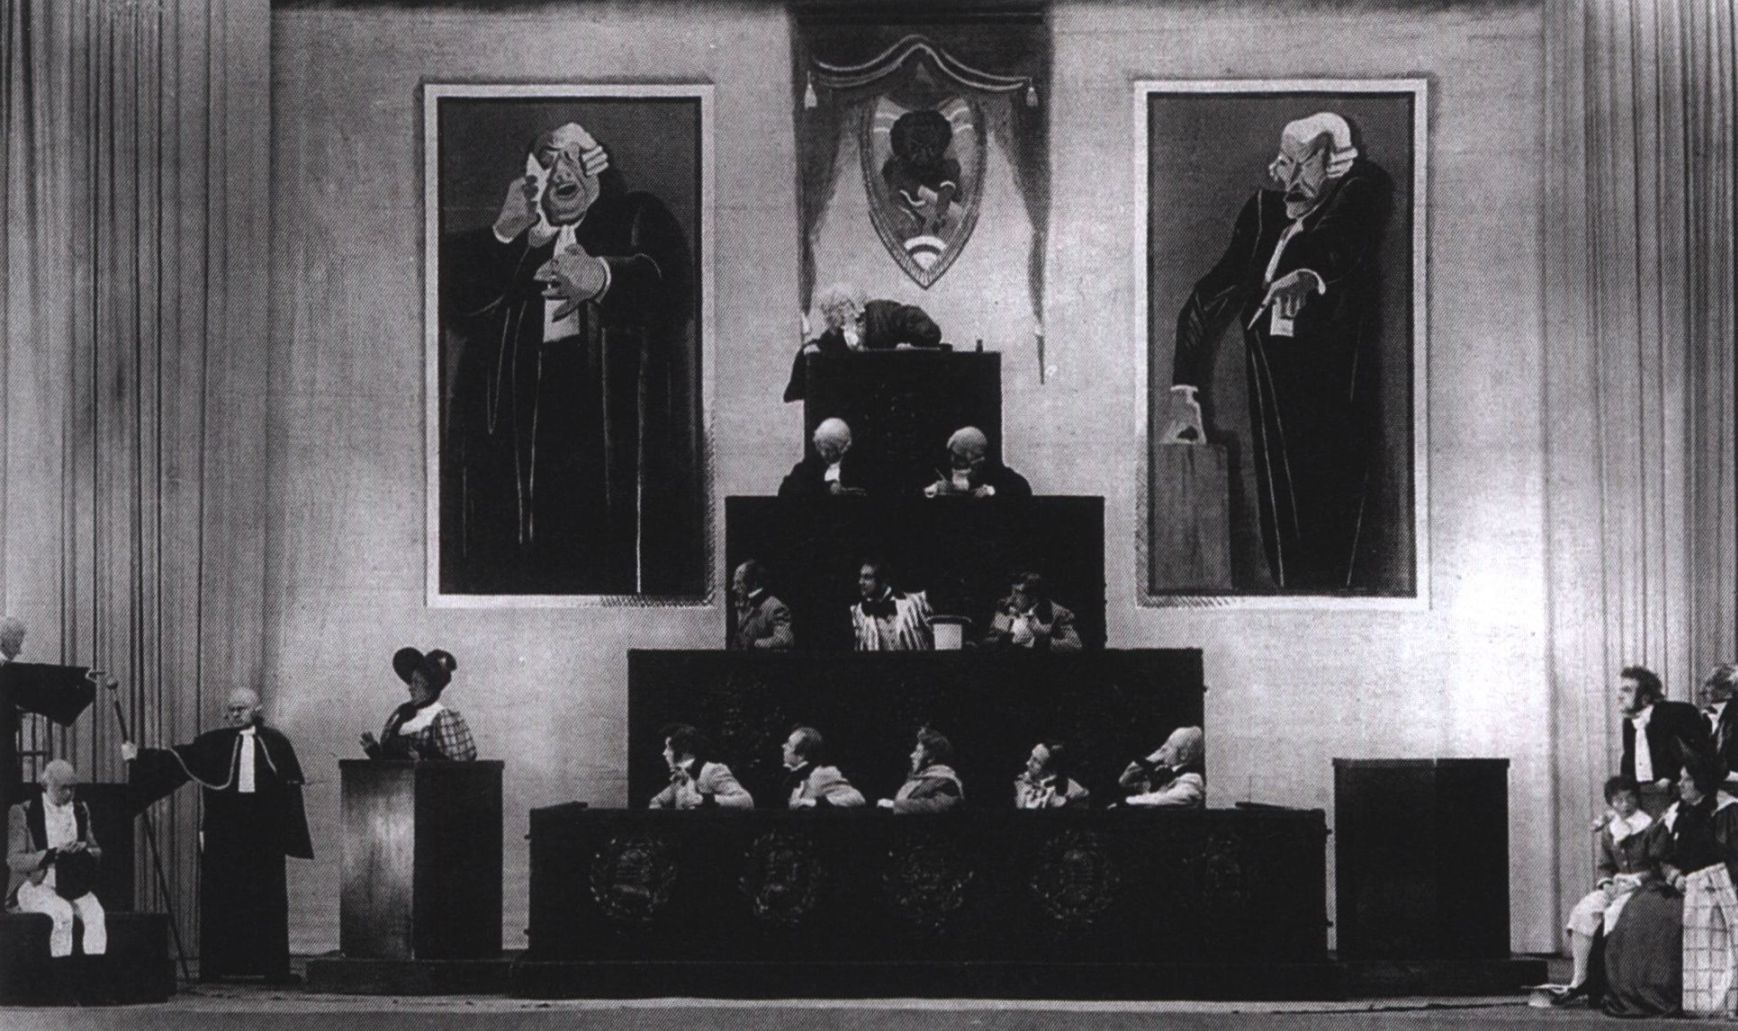 Сцена суда из «Пиквикского клуба» с Булгаковым в роли президента суда (на самом верху пирамиды), 1935 г.